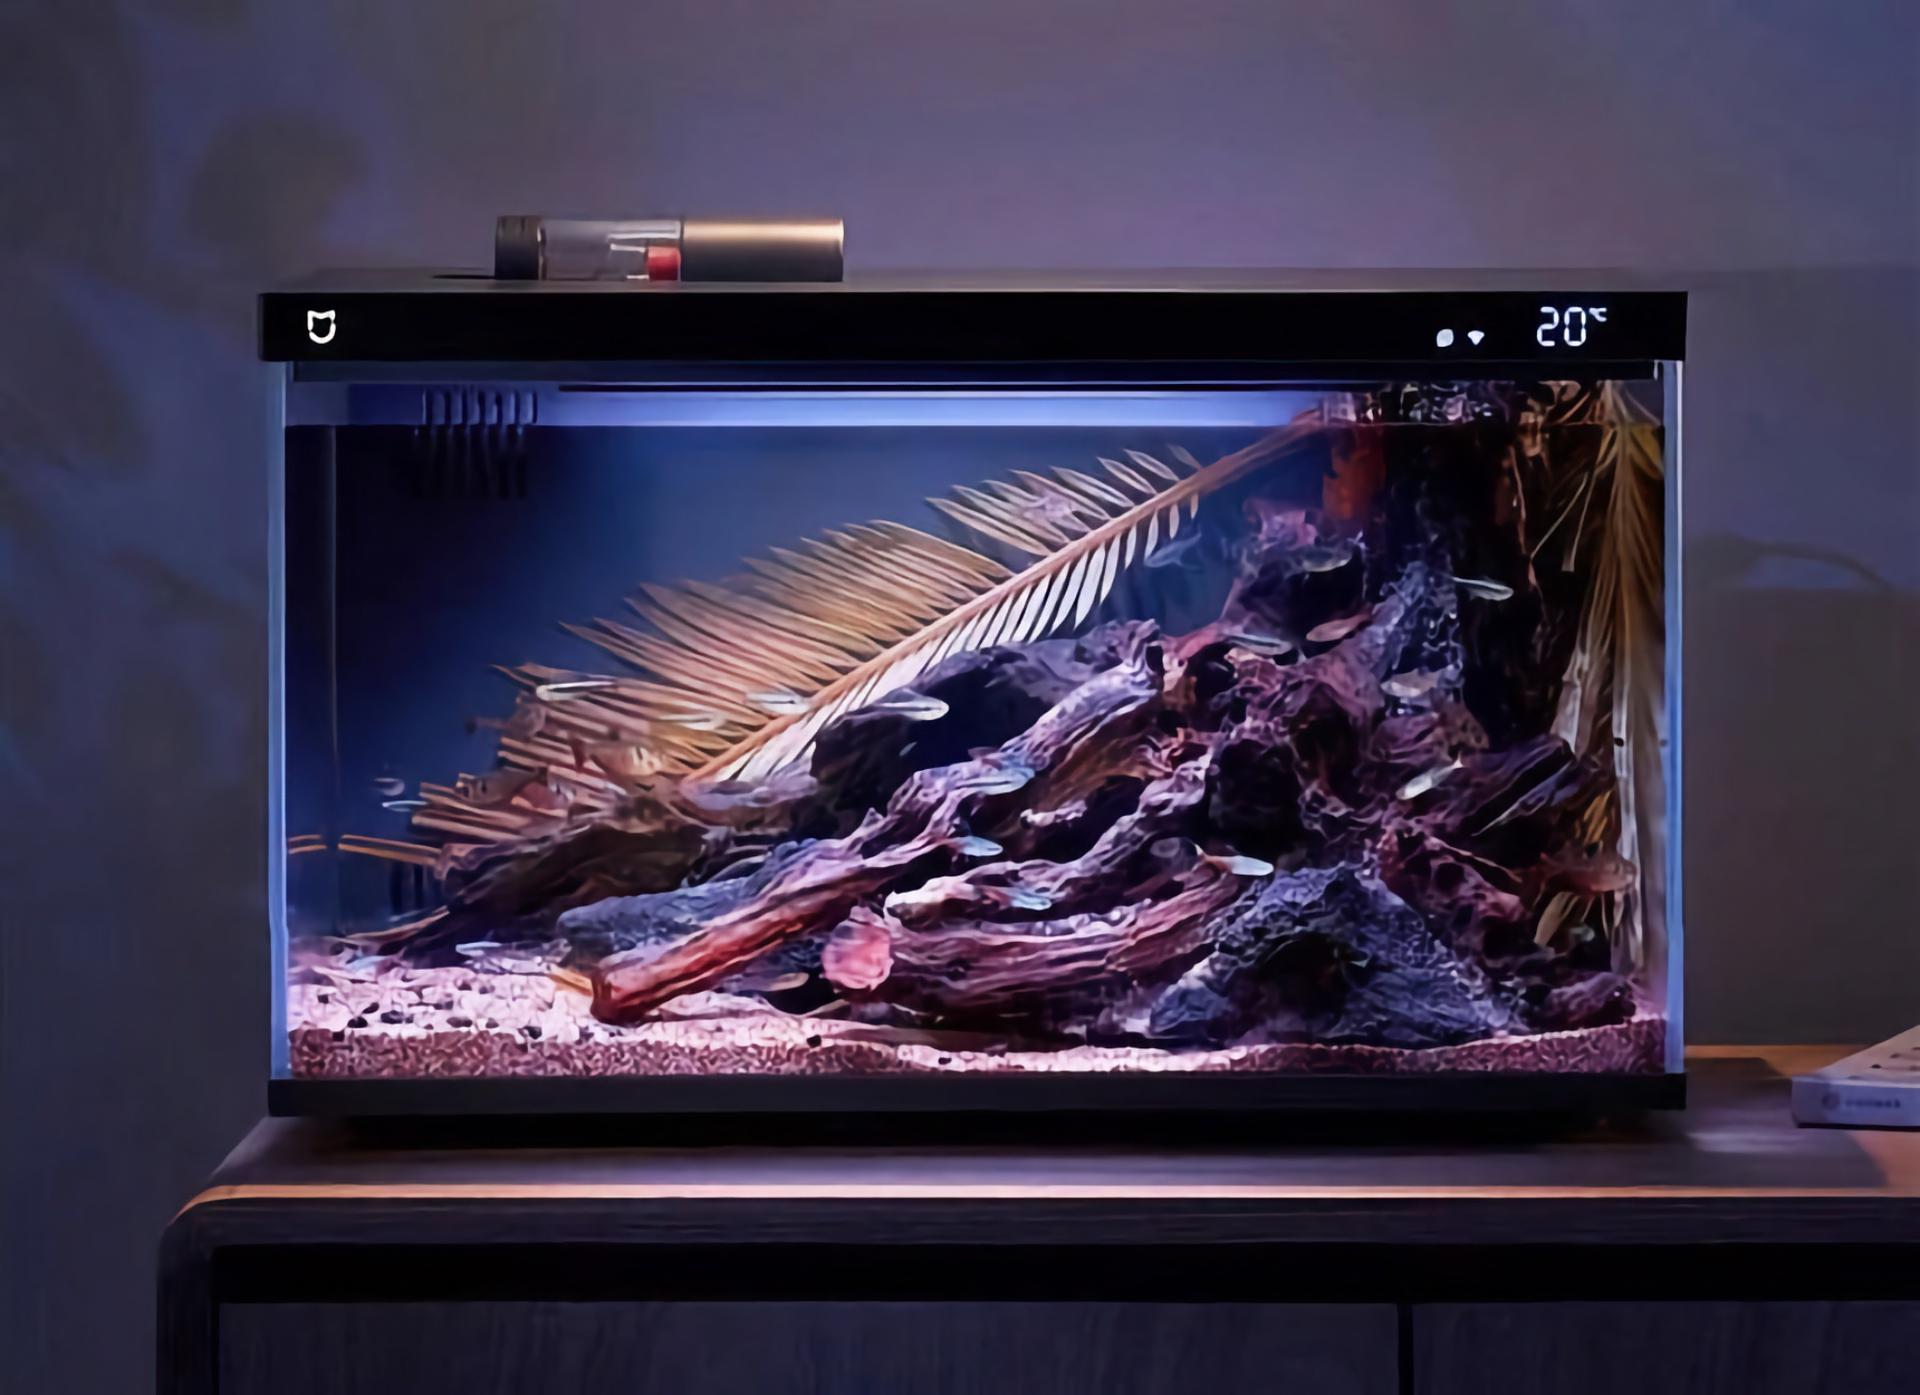 Xiaomi lancia un acquario intelligente con sensore di temperatura, illuminazione RGB e funzione di alimentazione remota dei pesci